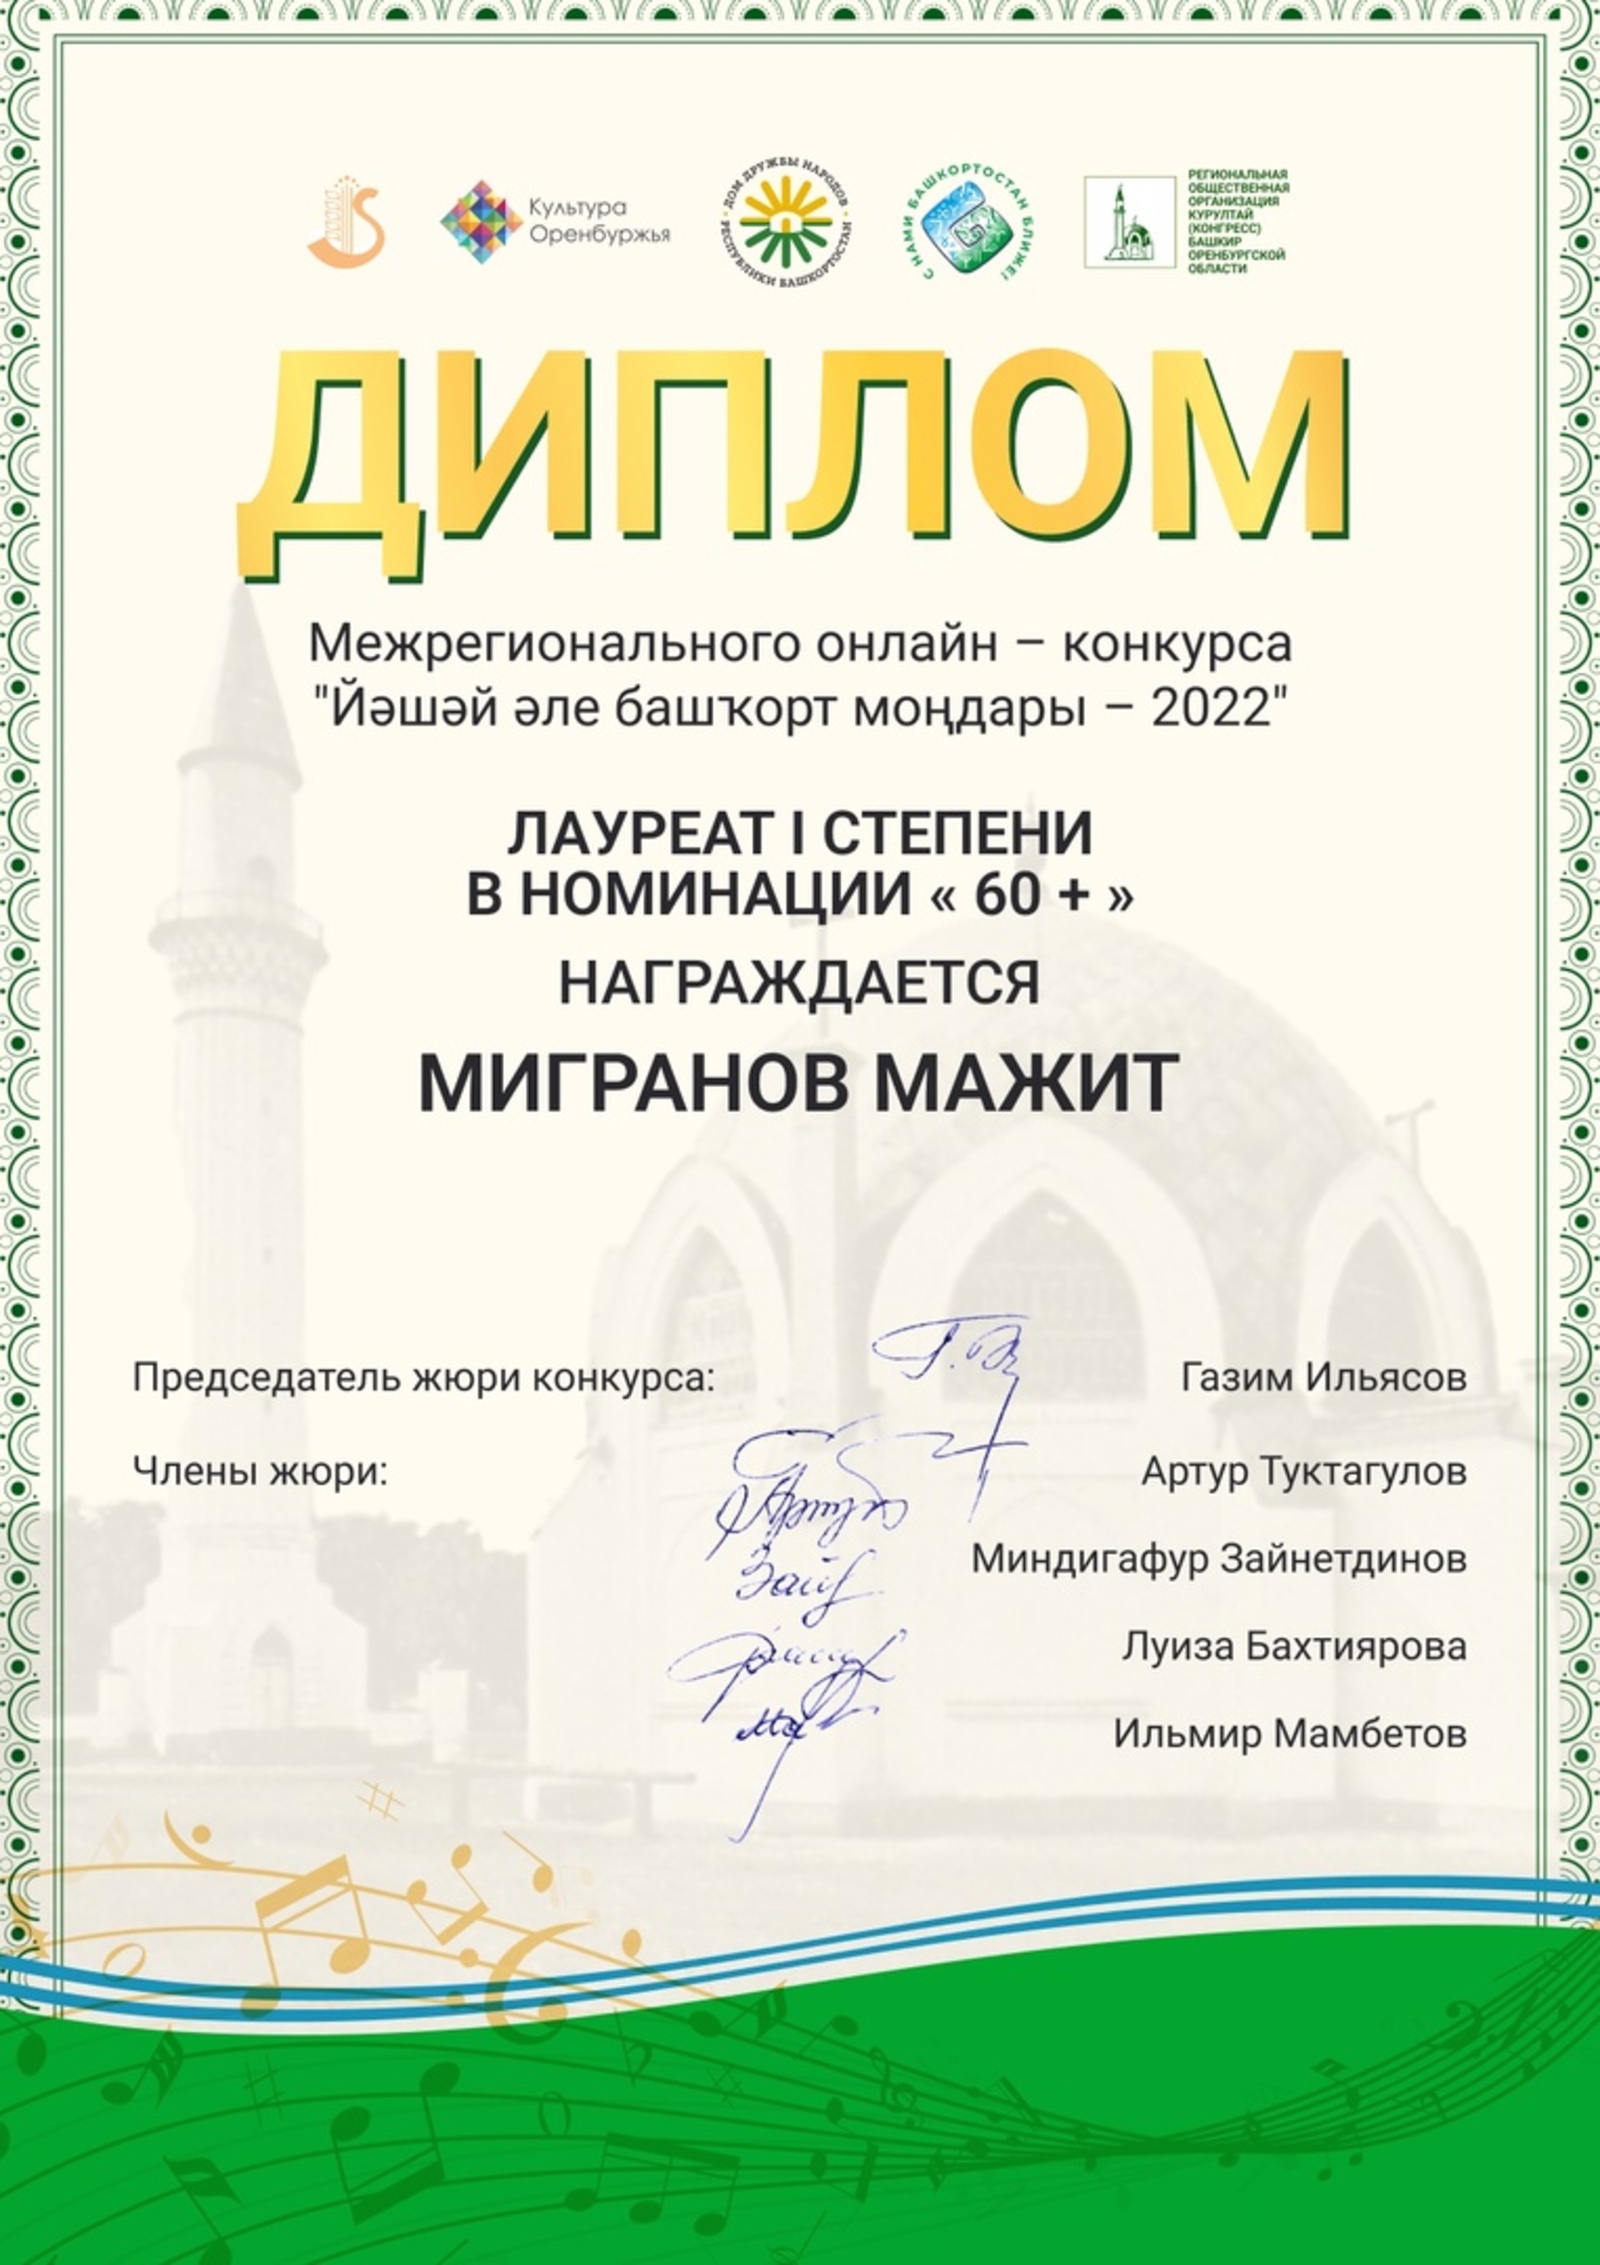 Дом дружбы народов РБ в Оренбургской области проводил межрегиональный онлайн-конкурс